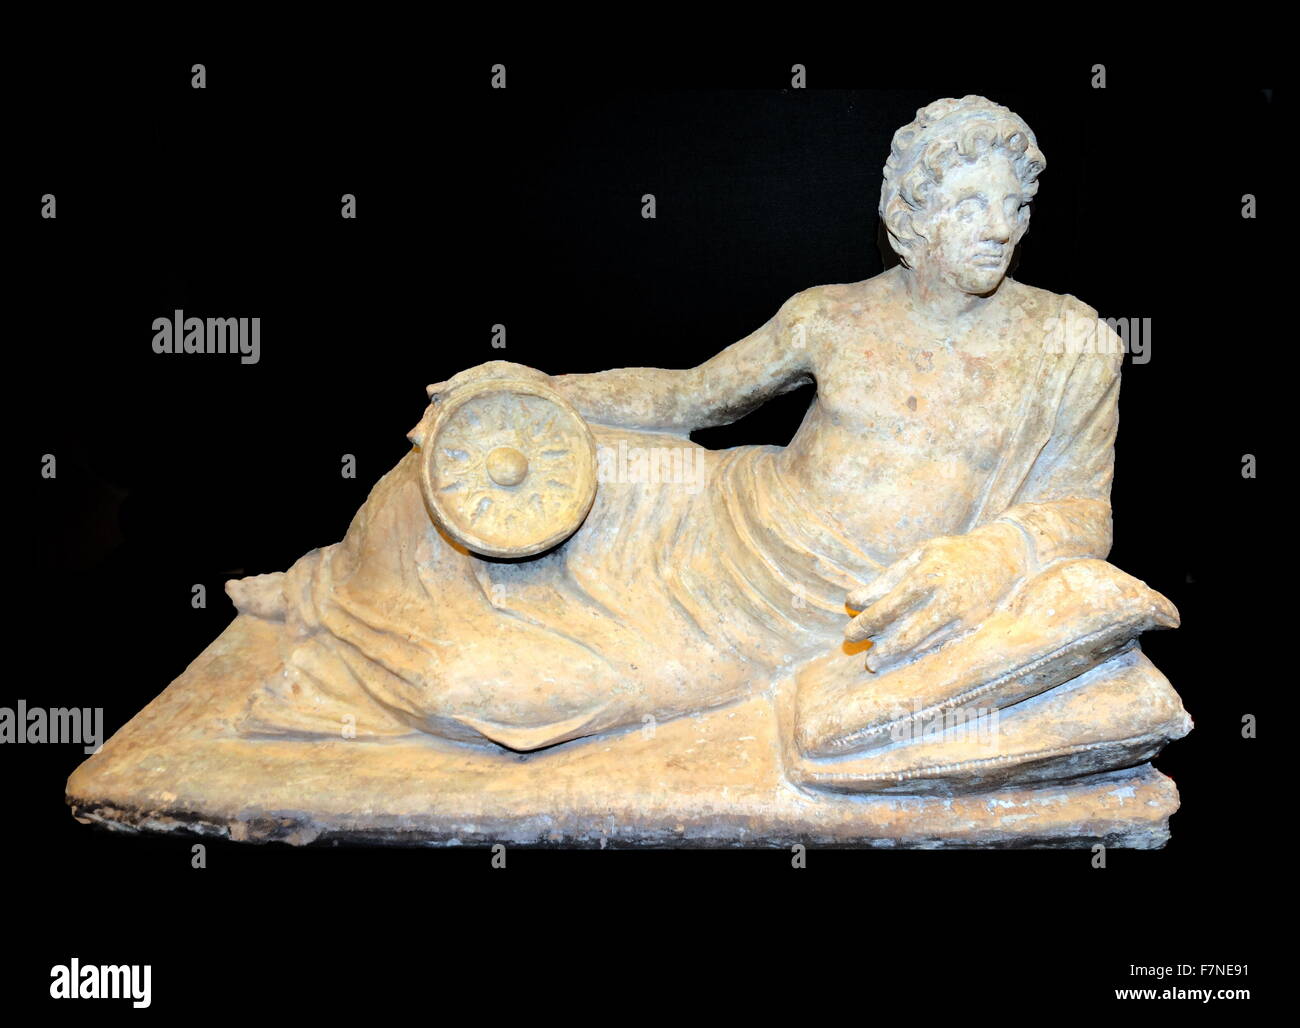 Top da una terracotta urna cineraria, con una figura di un uomo reclinabili, tenendo una goffratura libagione ciotola. Etrusca, 200-100 A.C. Foto Stock